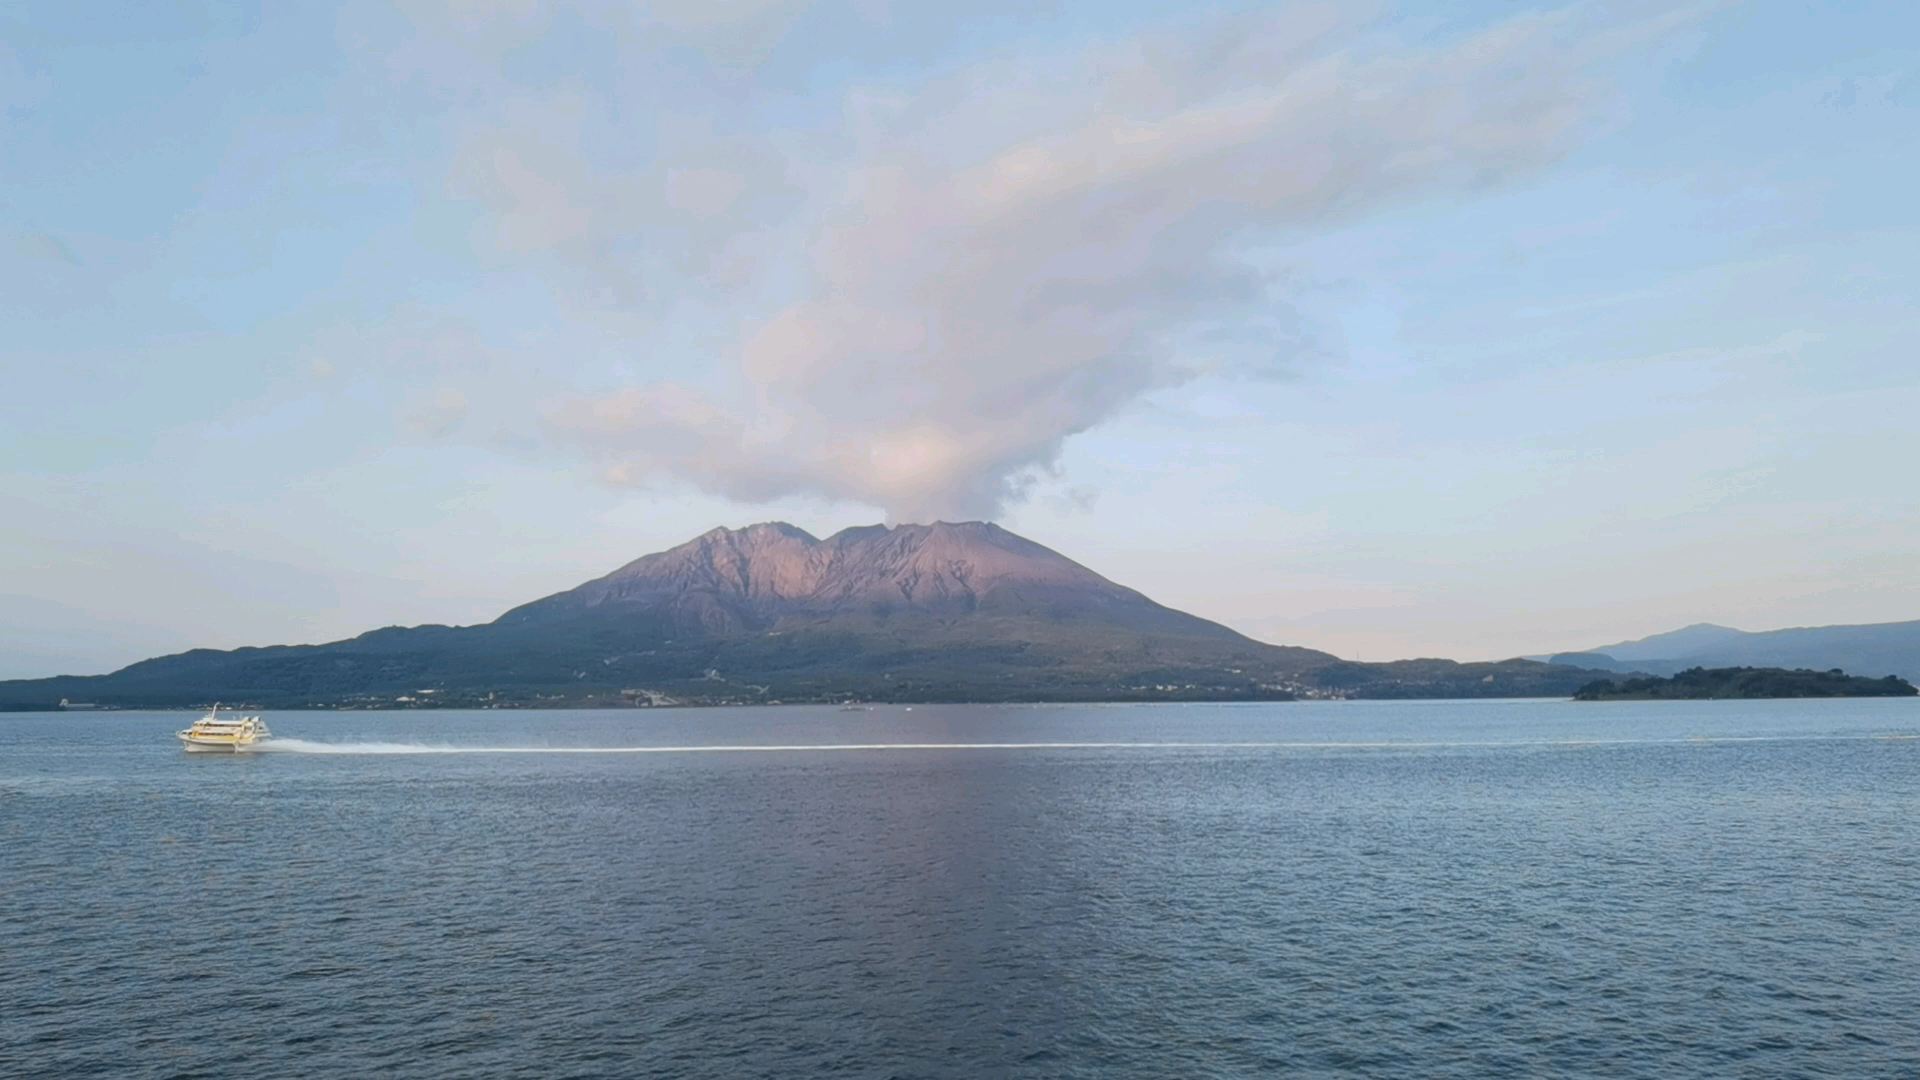 鹿儿岛坐船去樱岛，可以远眺活火山的樱岛全貌。